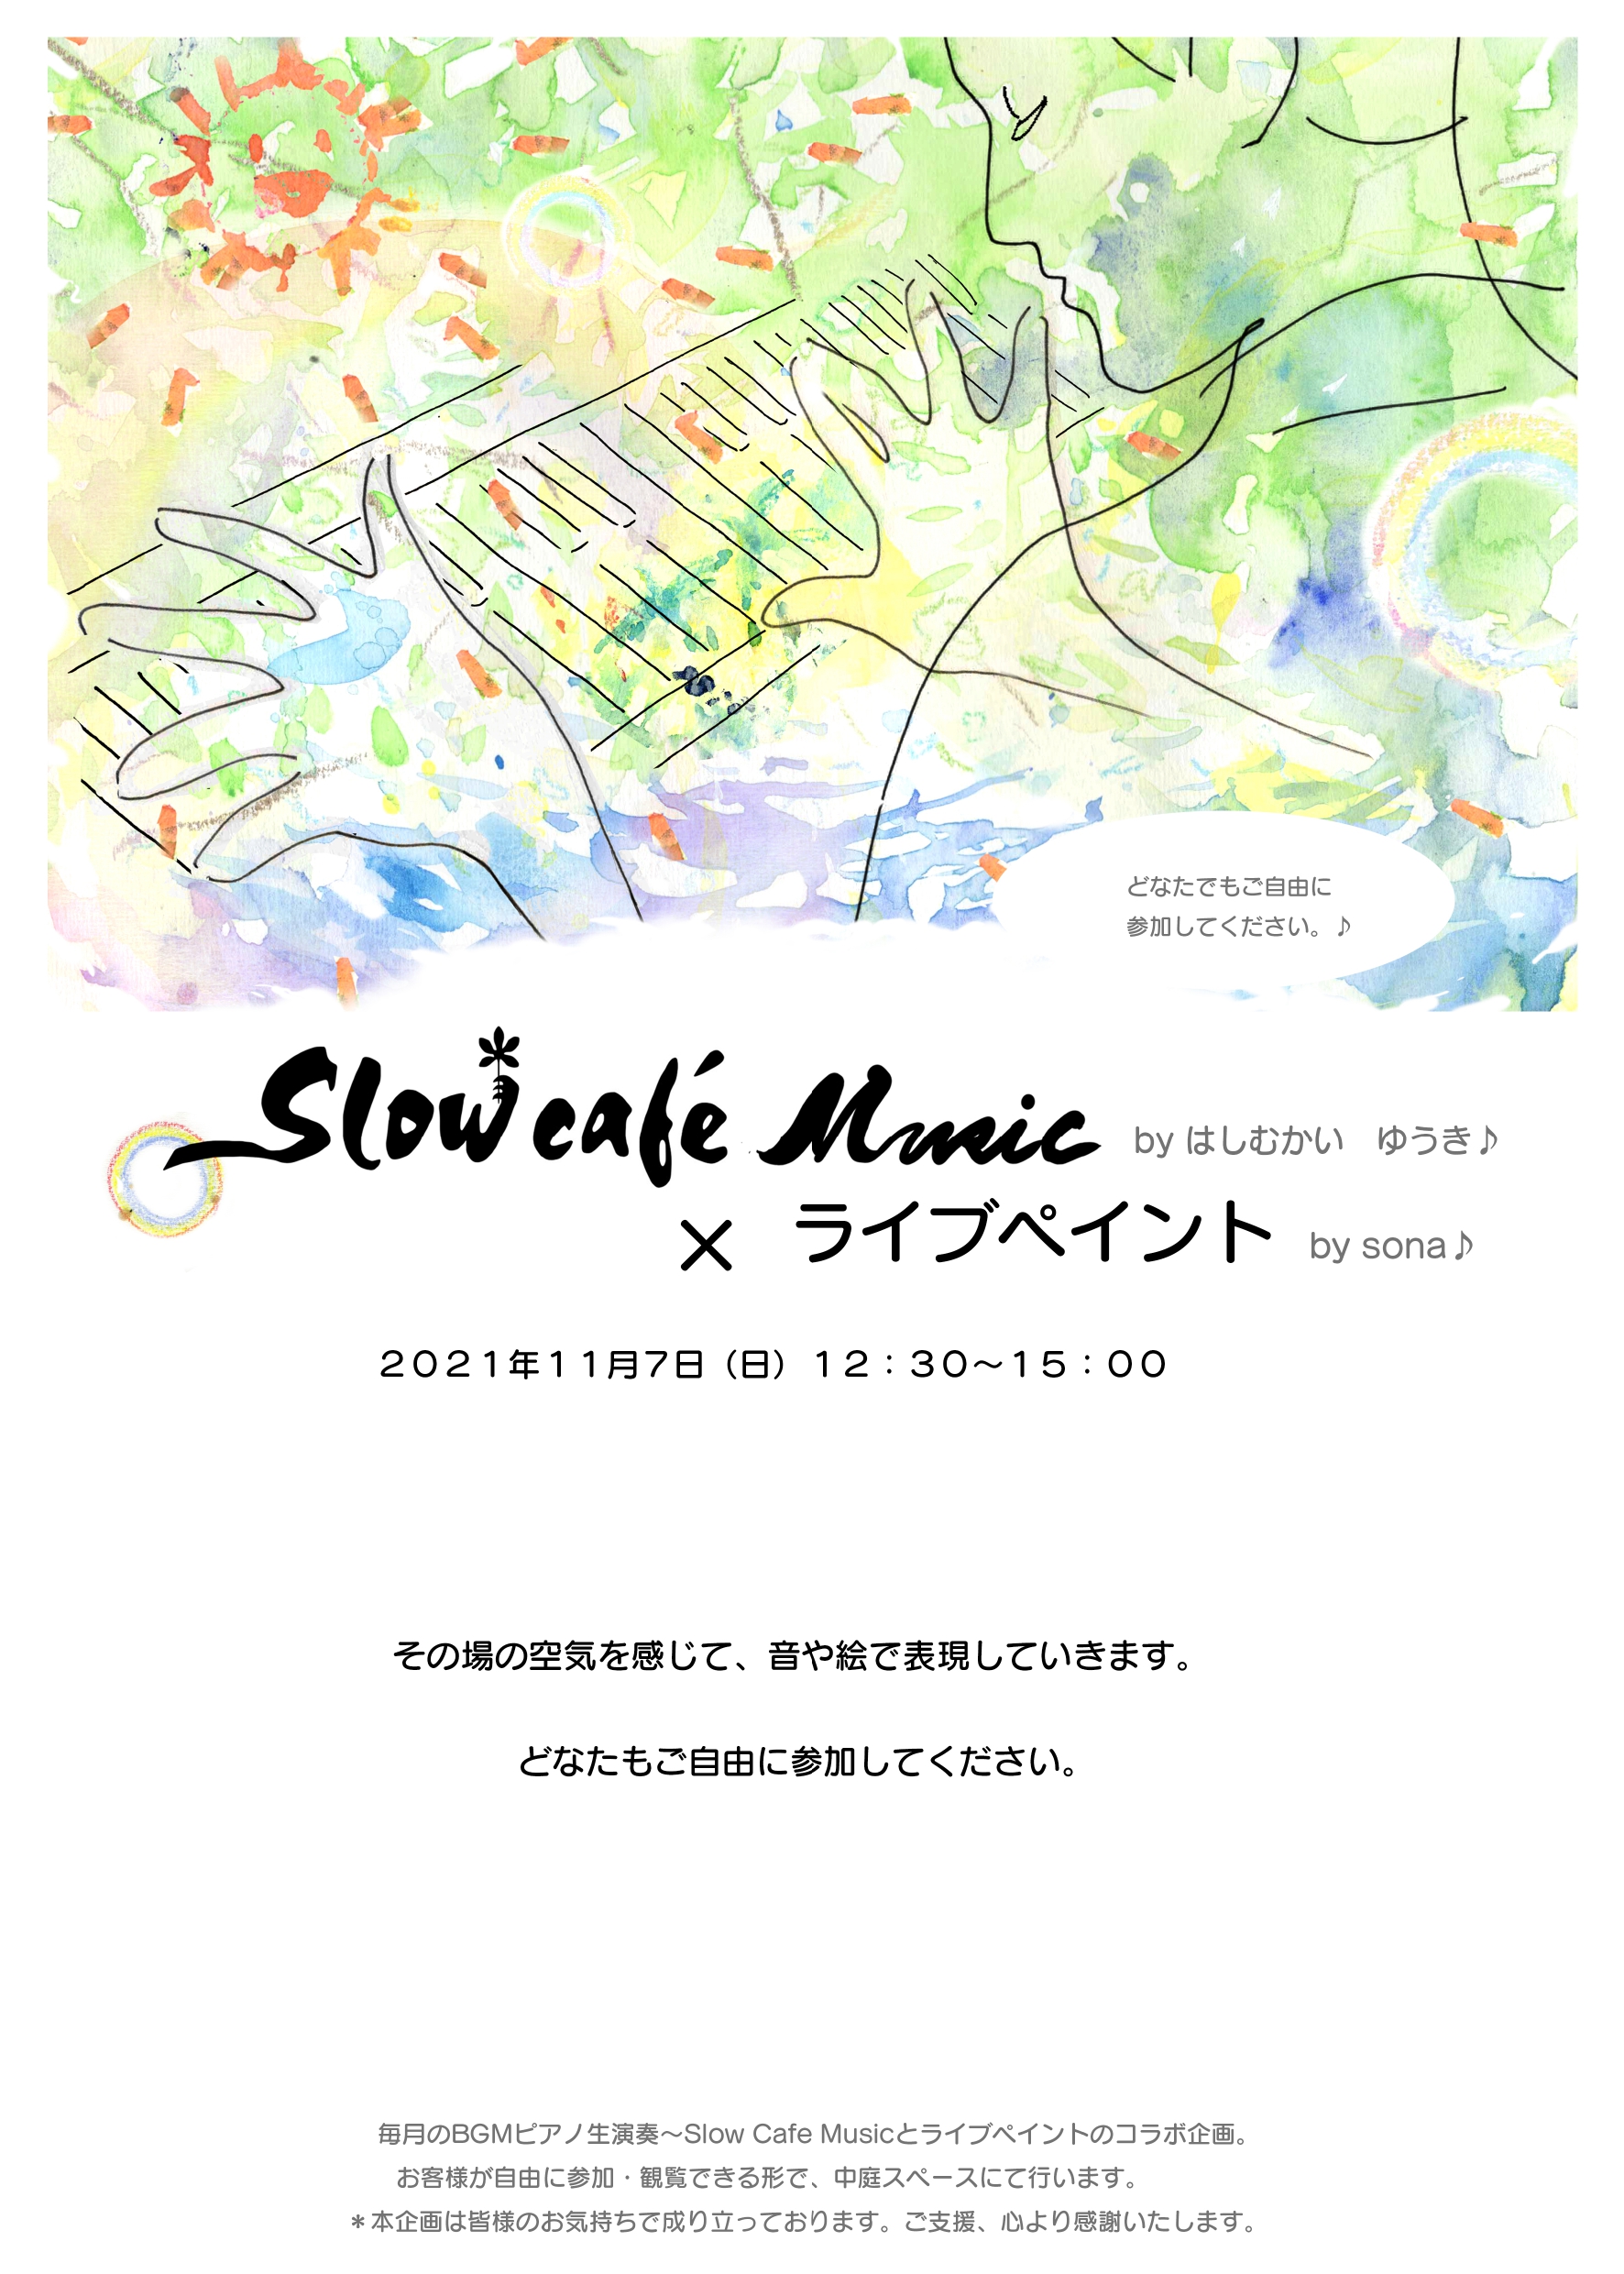 11/7(日) Slow Cafe Music x ライブペイント by はしむかいゆうき & sona